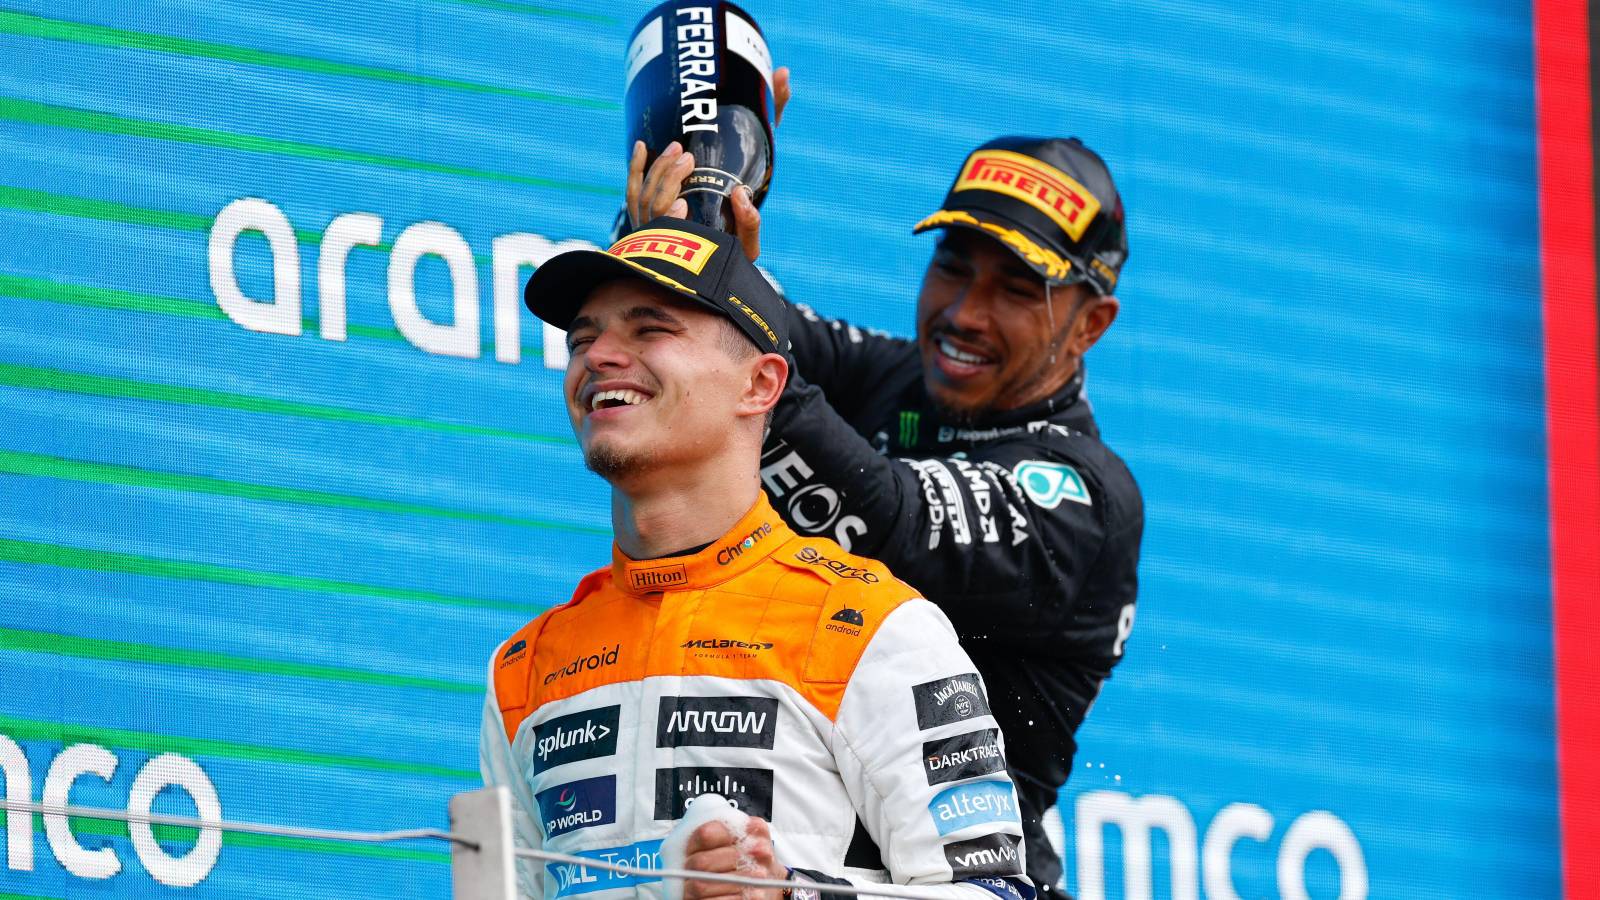 McLaren duo overlooked as Lewis Hamilton’s Mercedes replacement